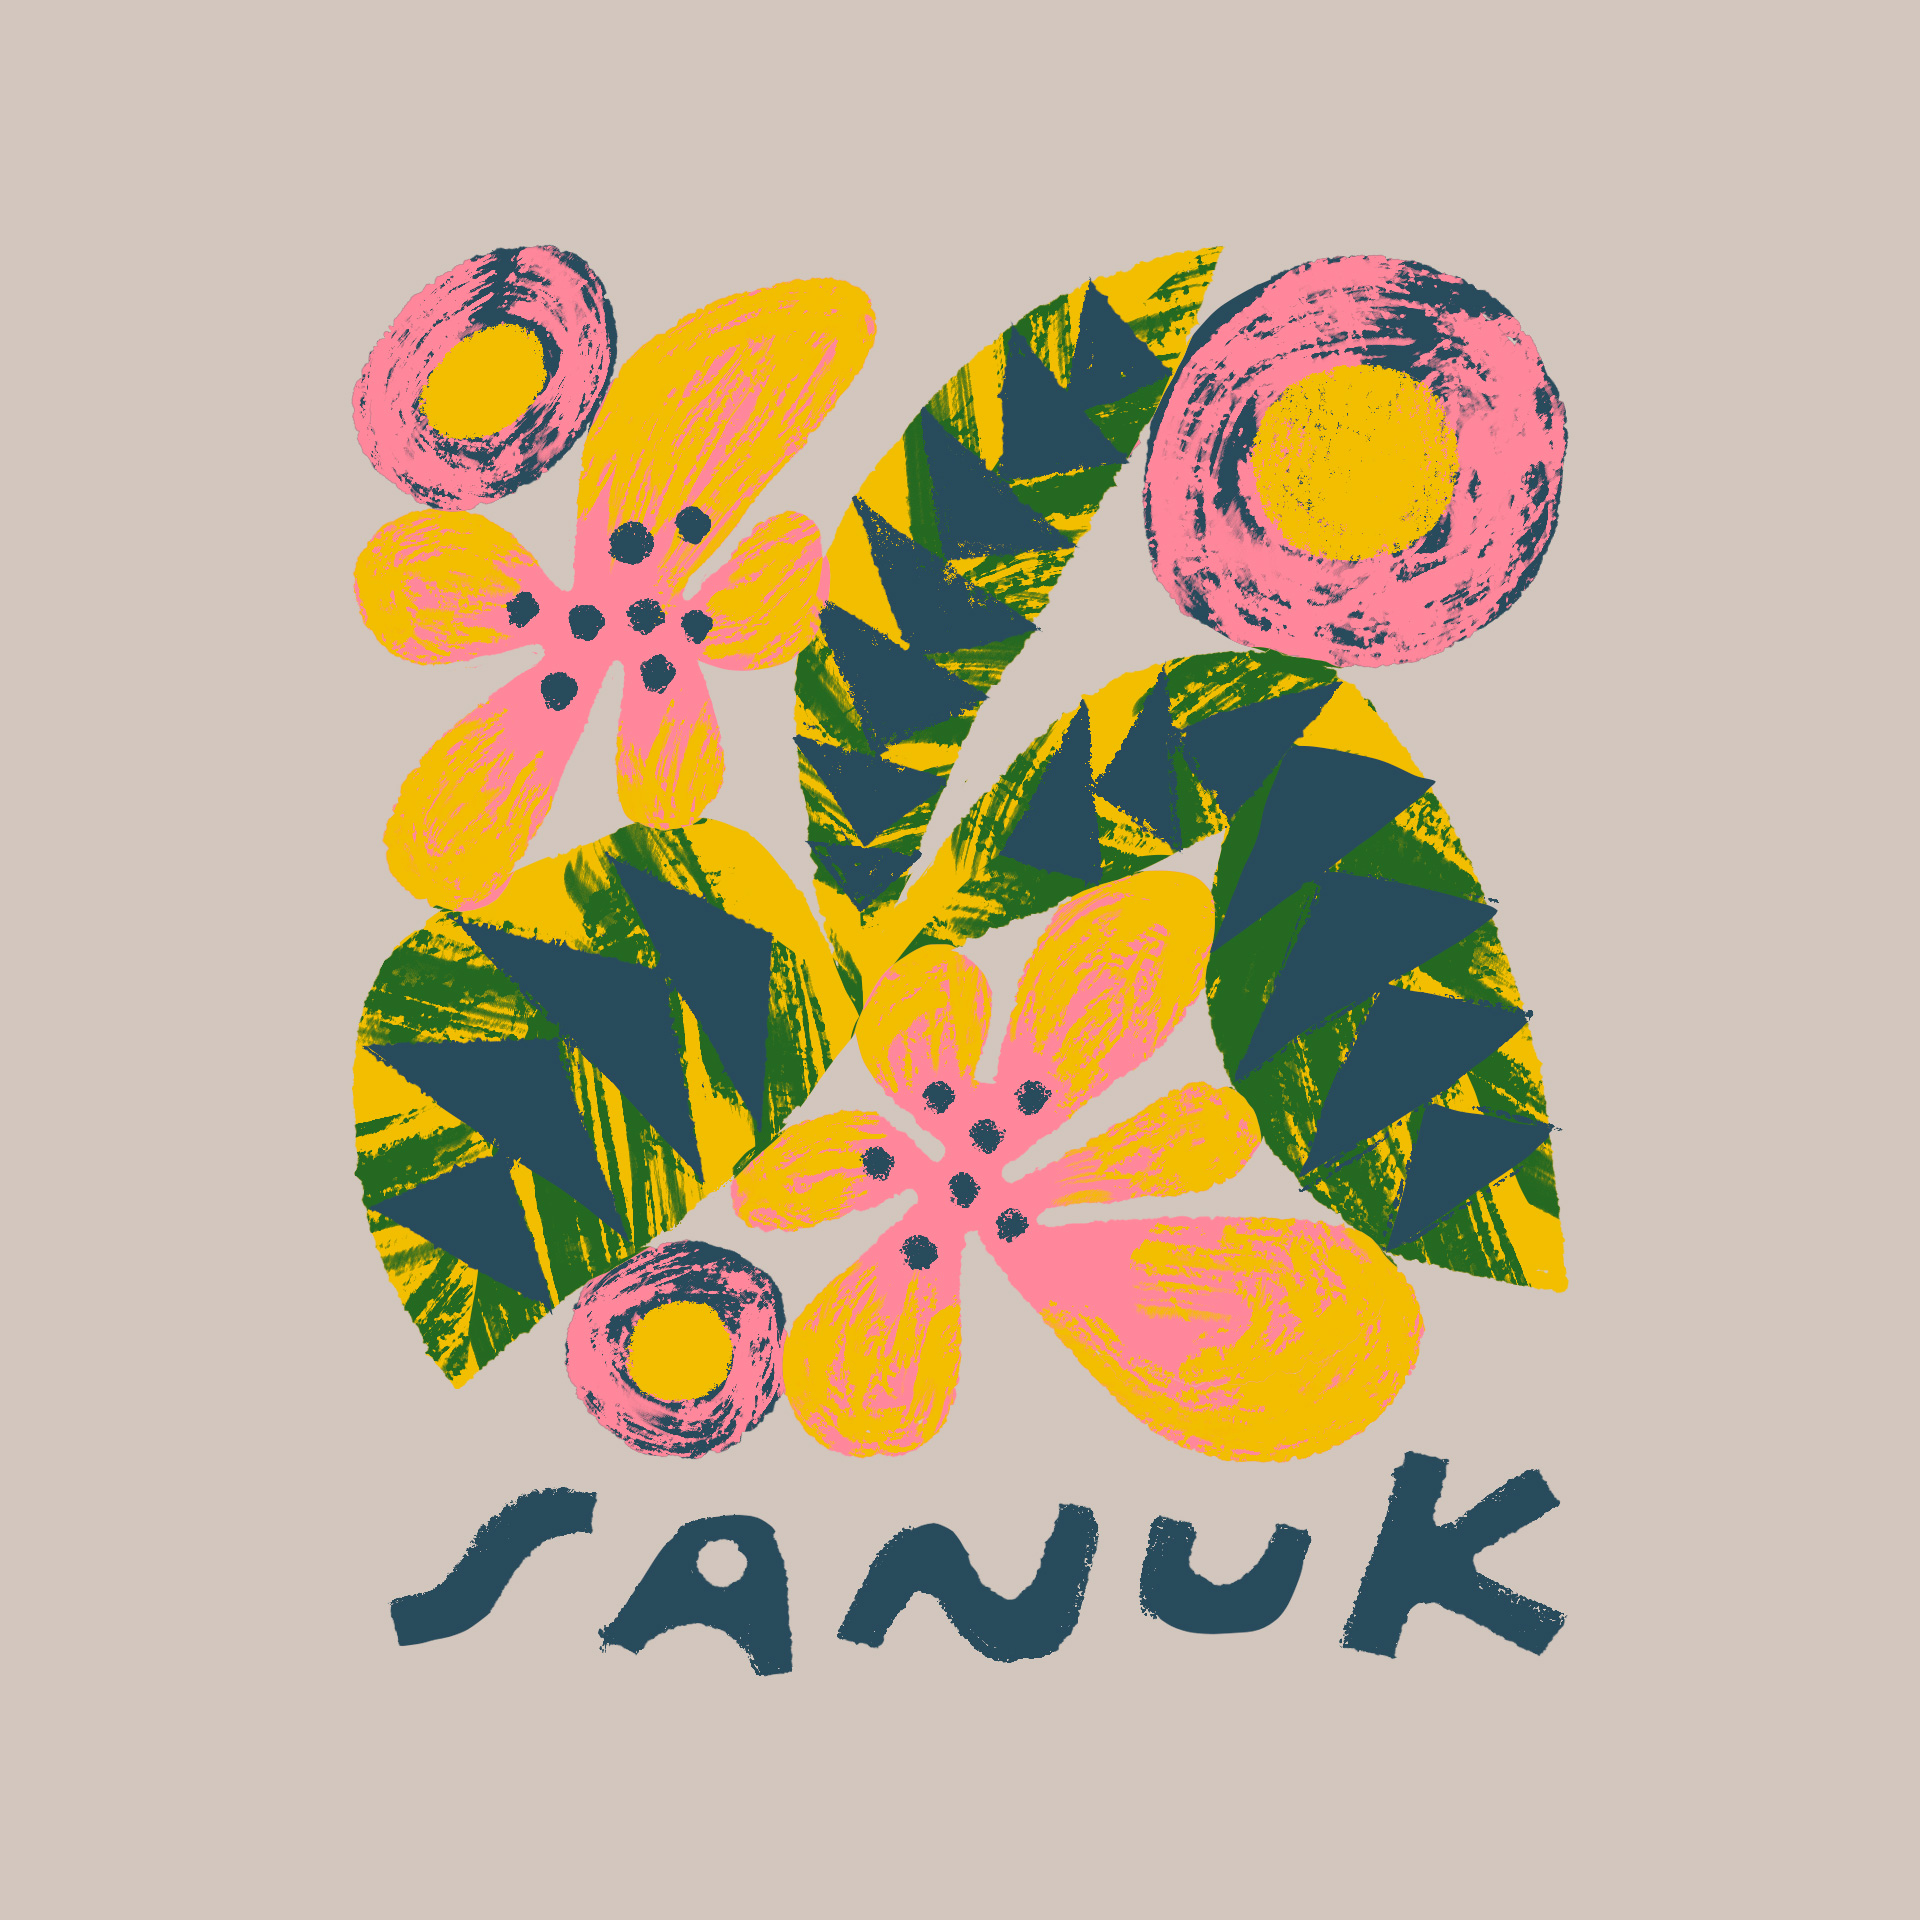 sanuk flowers merch illustration